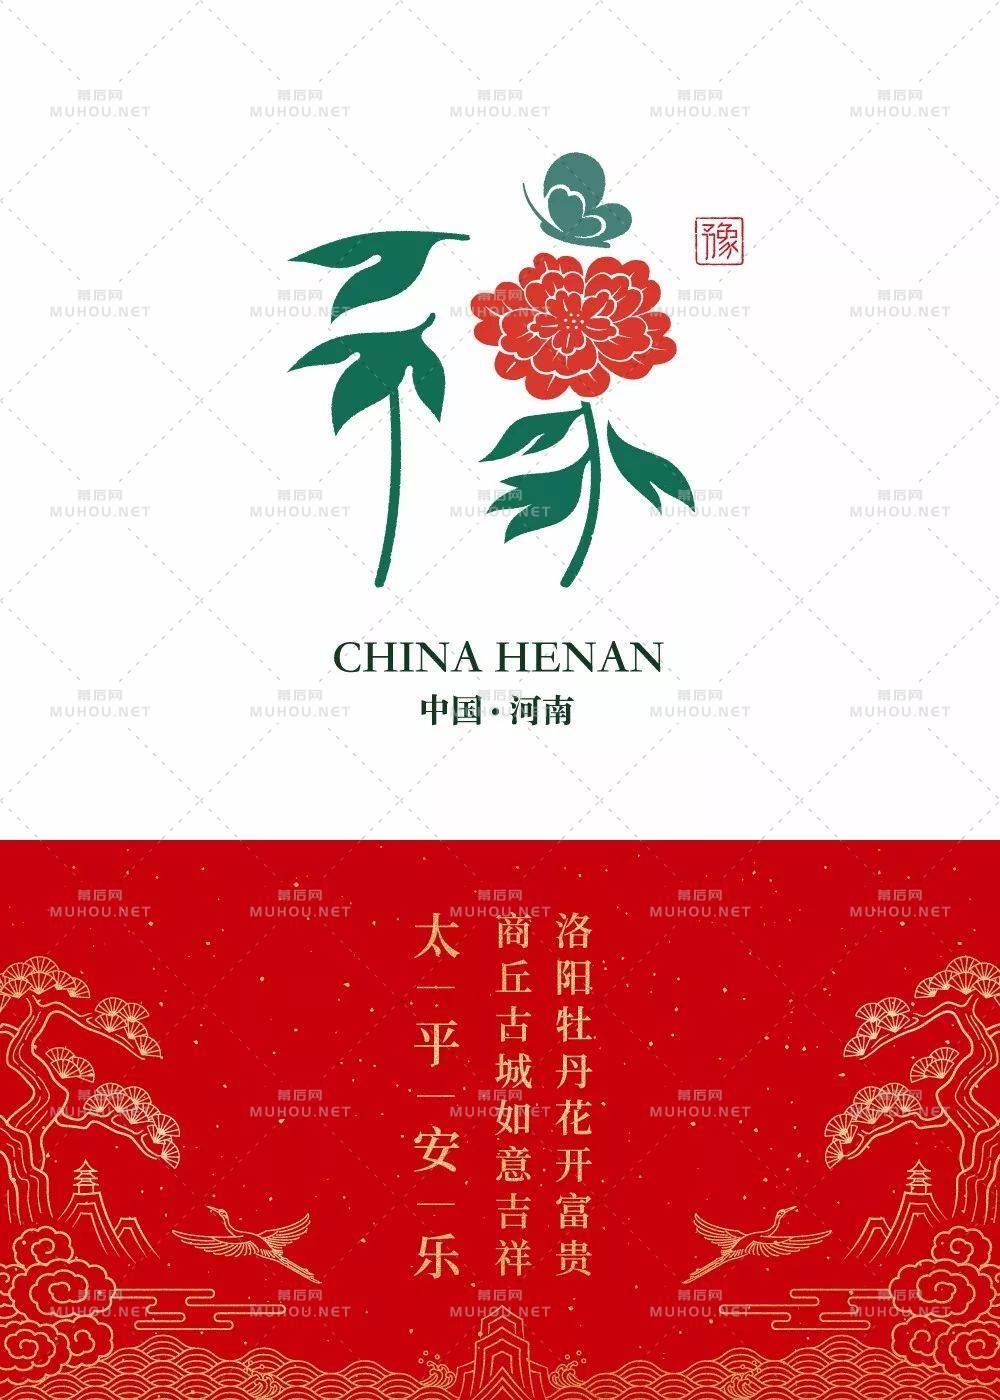 石昌鸿34个省市简称版艺术文字设计作品，2020版全新发布！